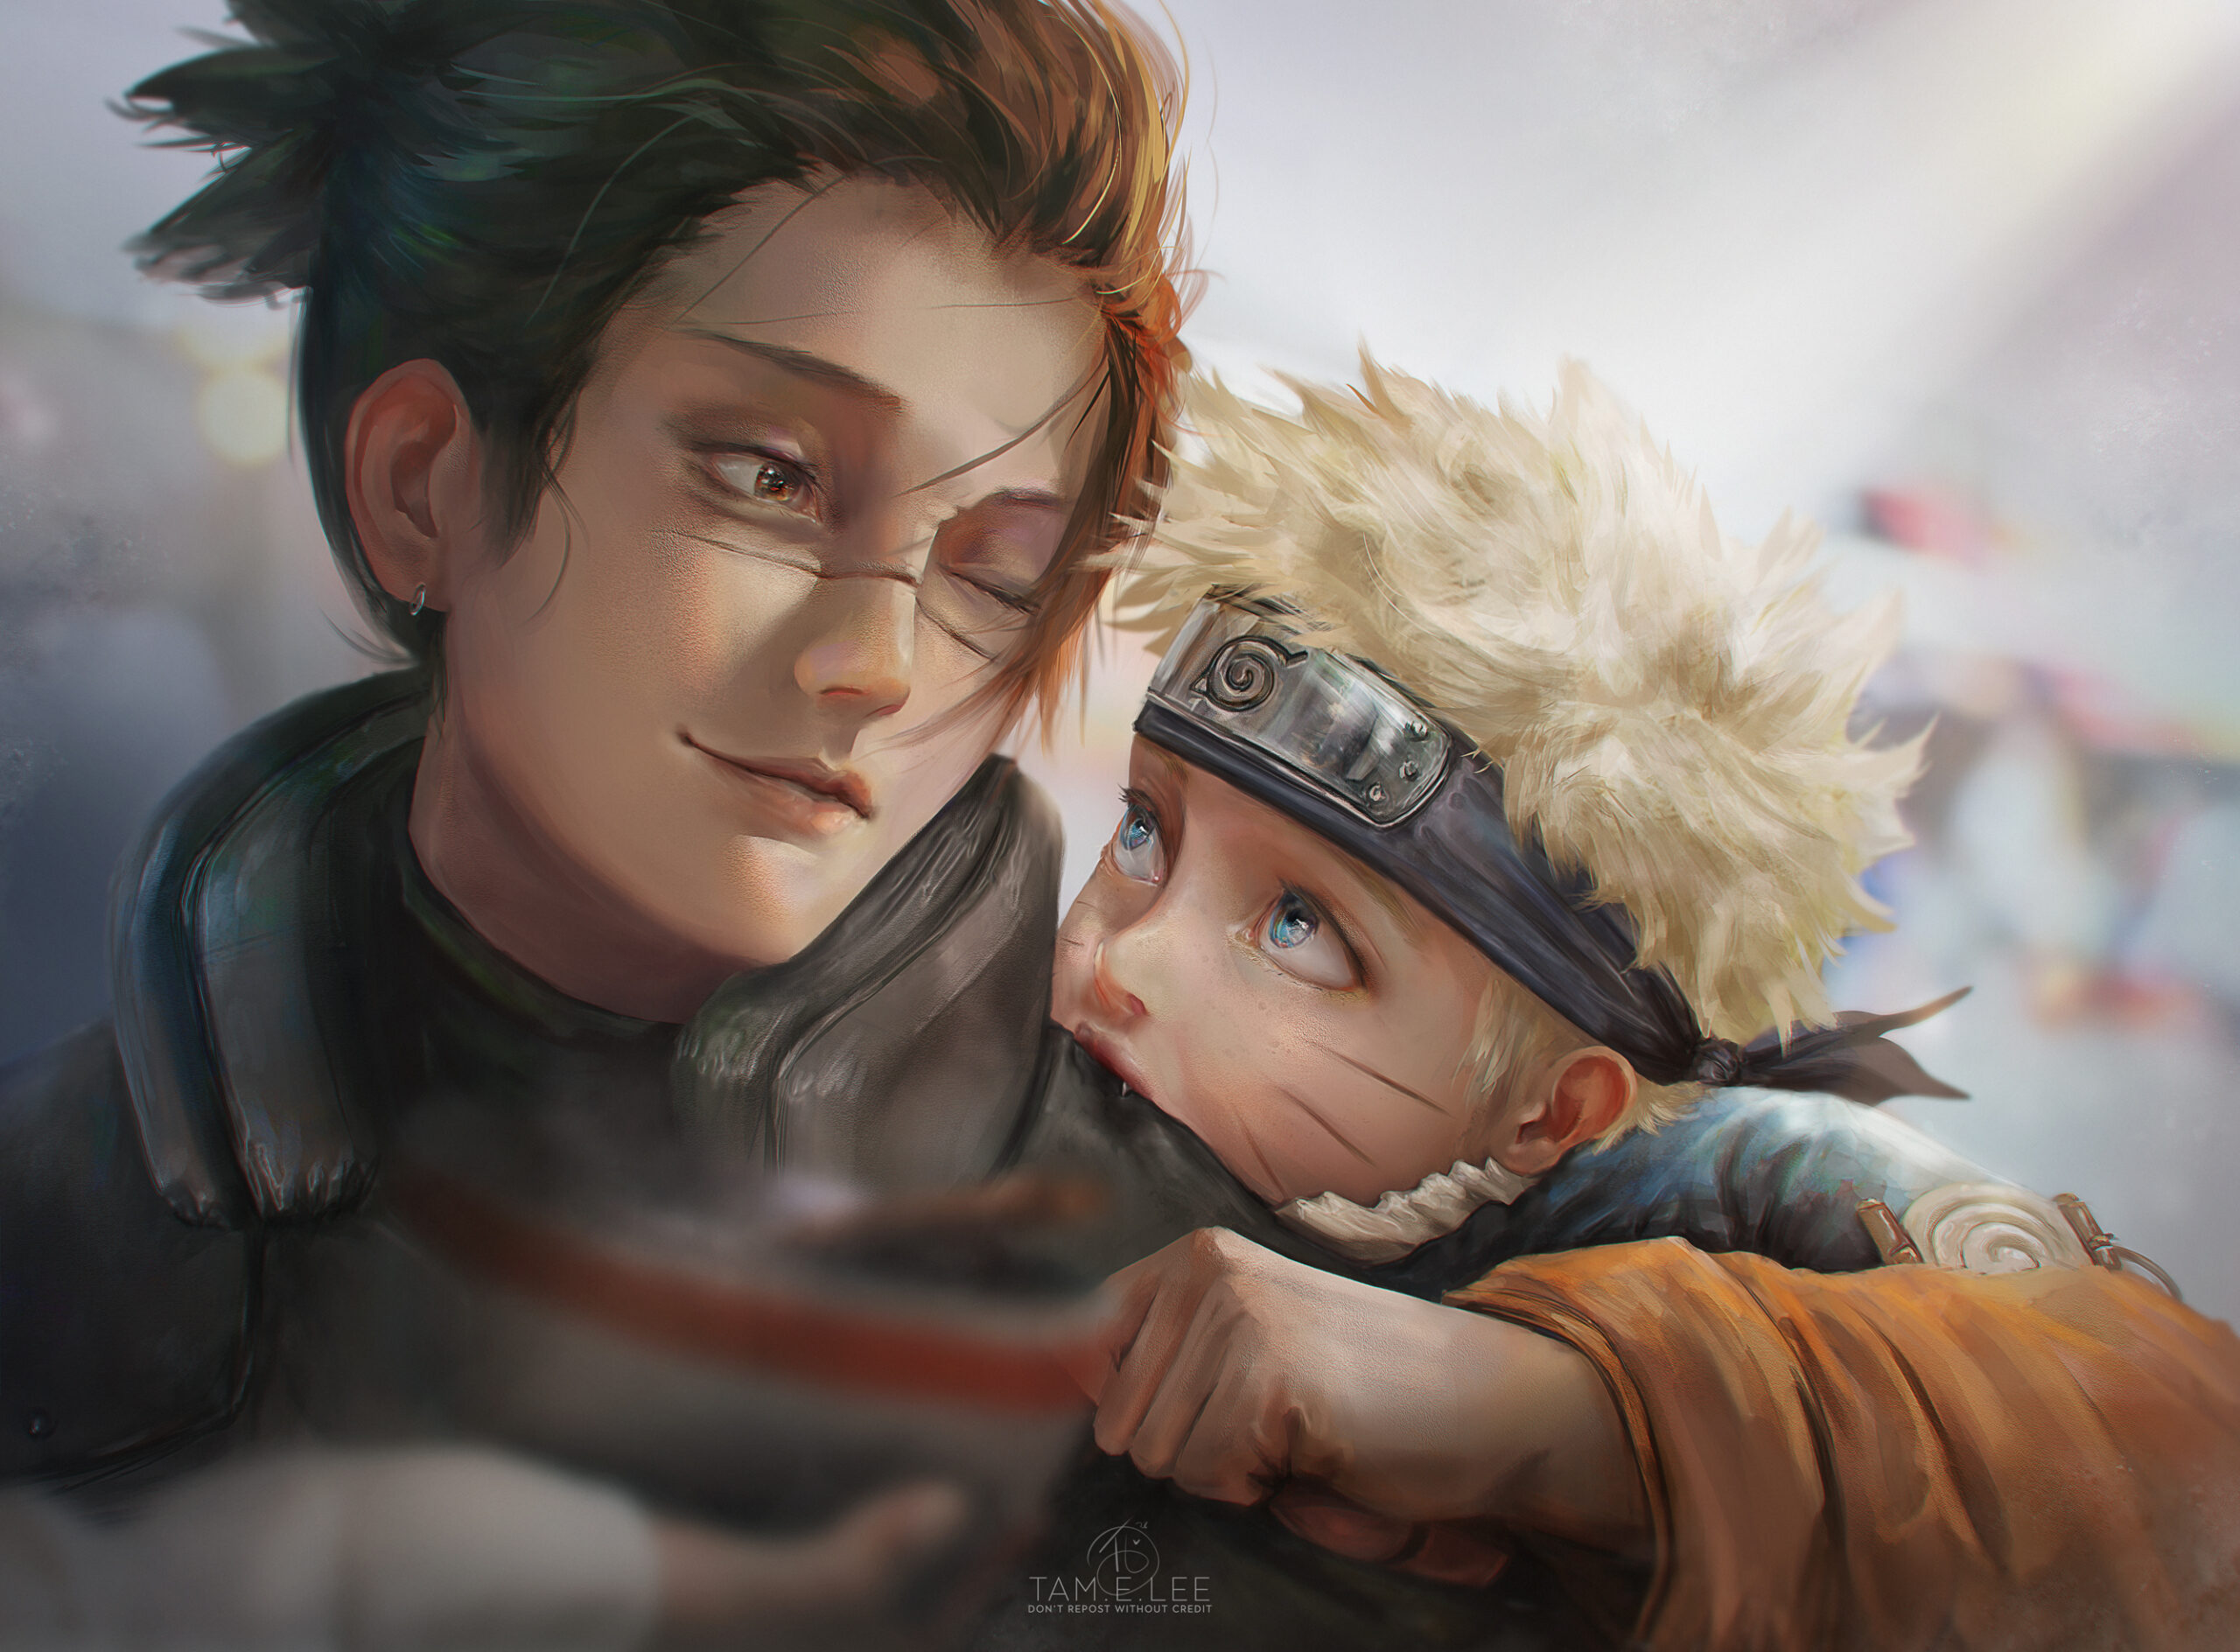 Pai e filho ❤  Naruto and sasuke, Naruto, Fotos de naruto